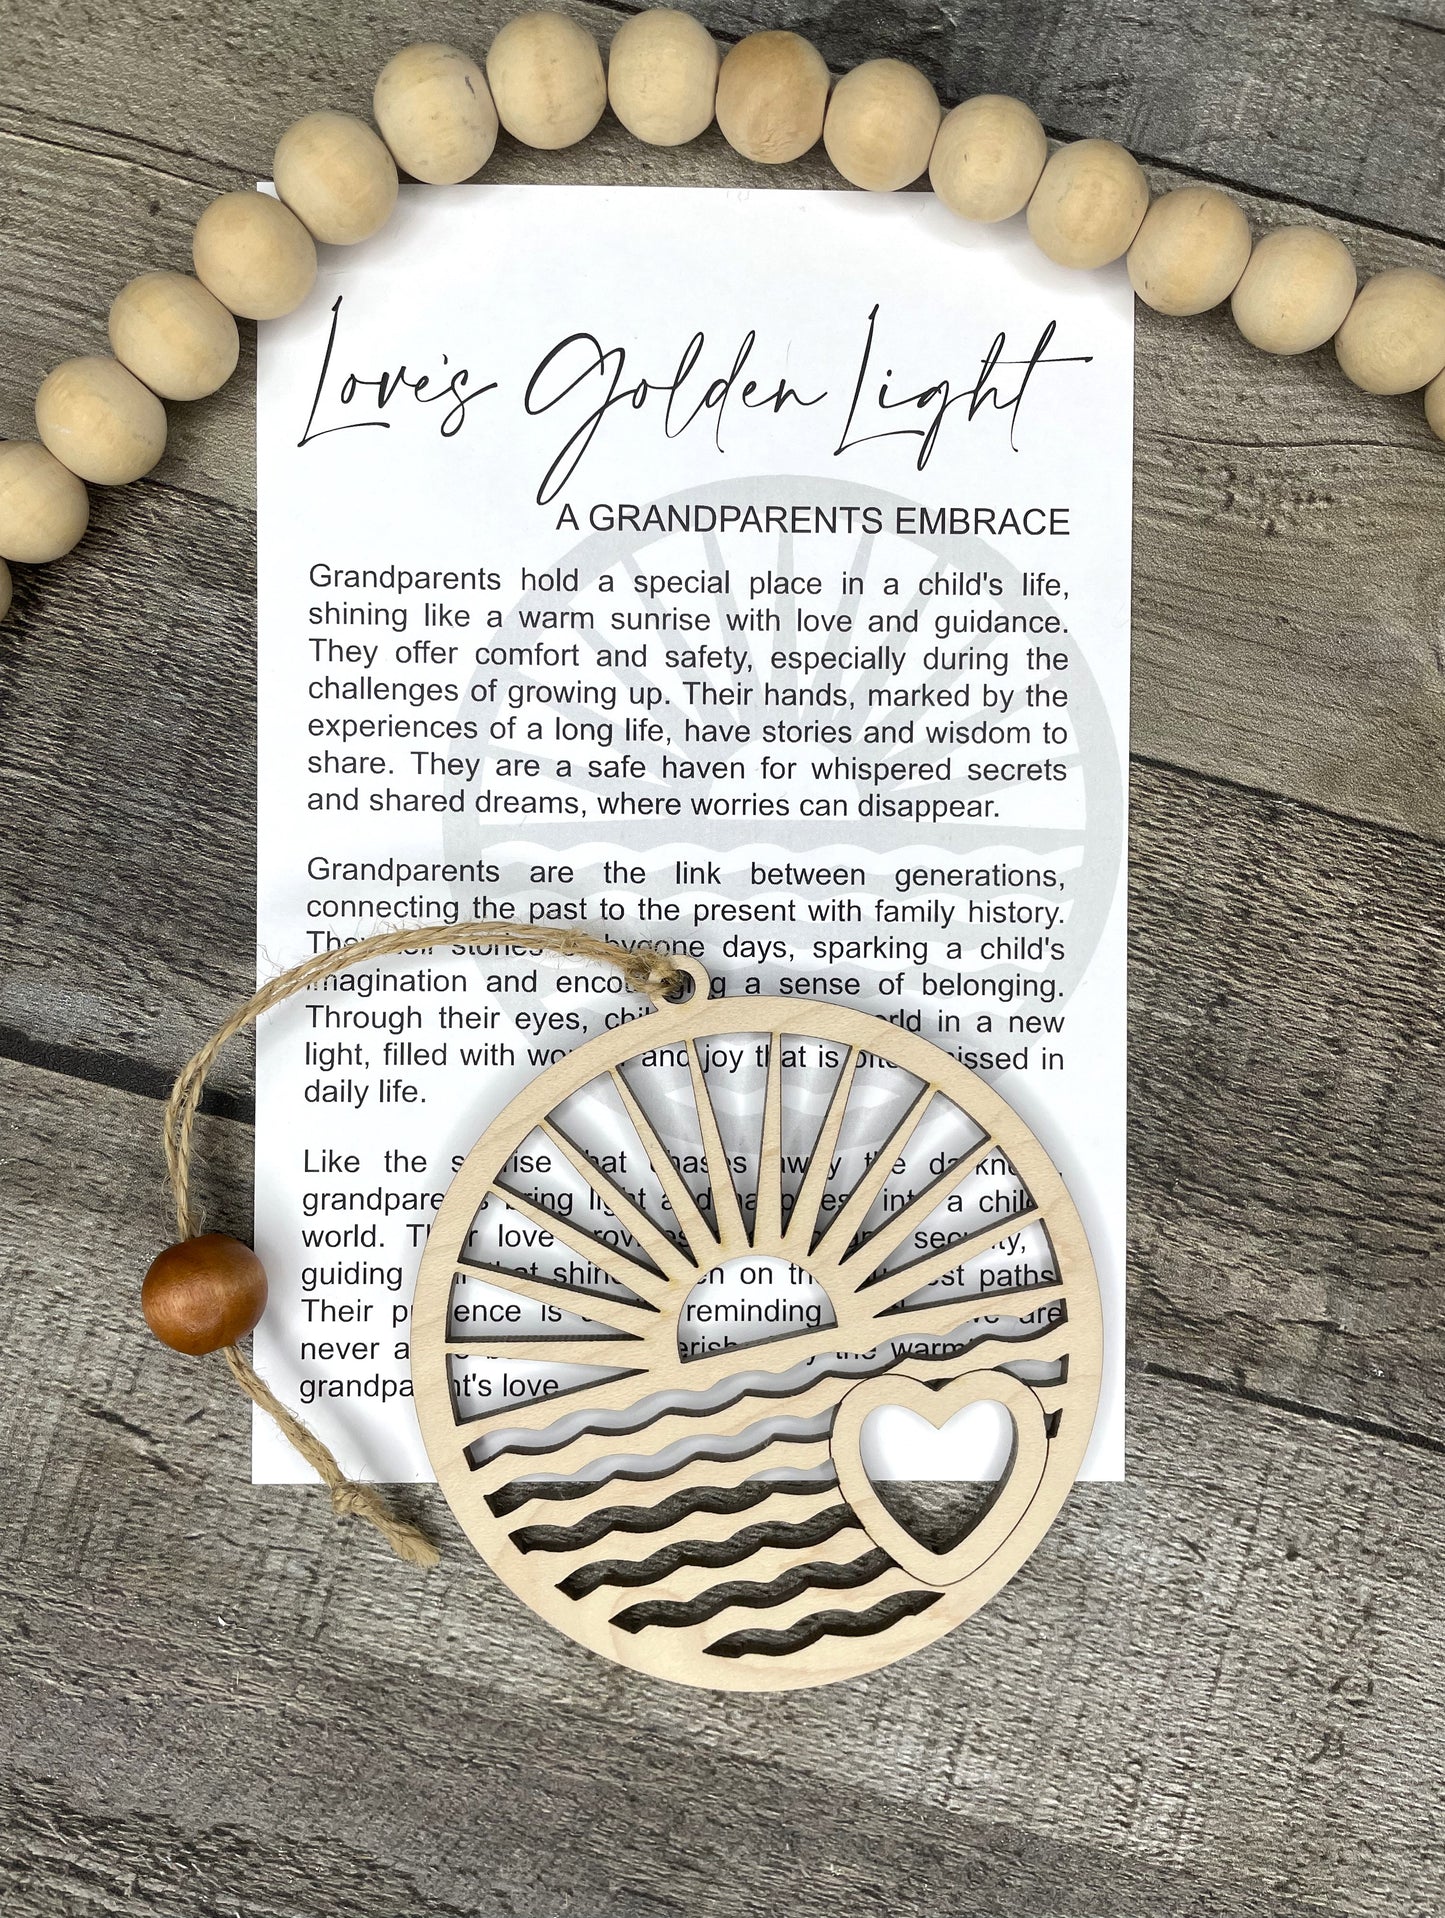 Grandparent Story Ornament: Love's Golden Light